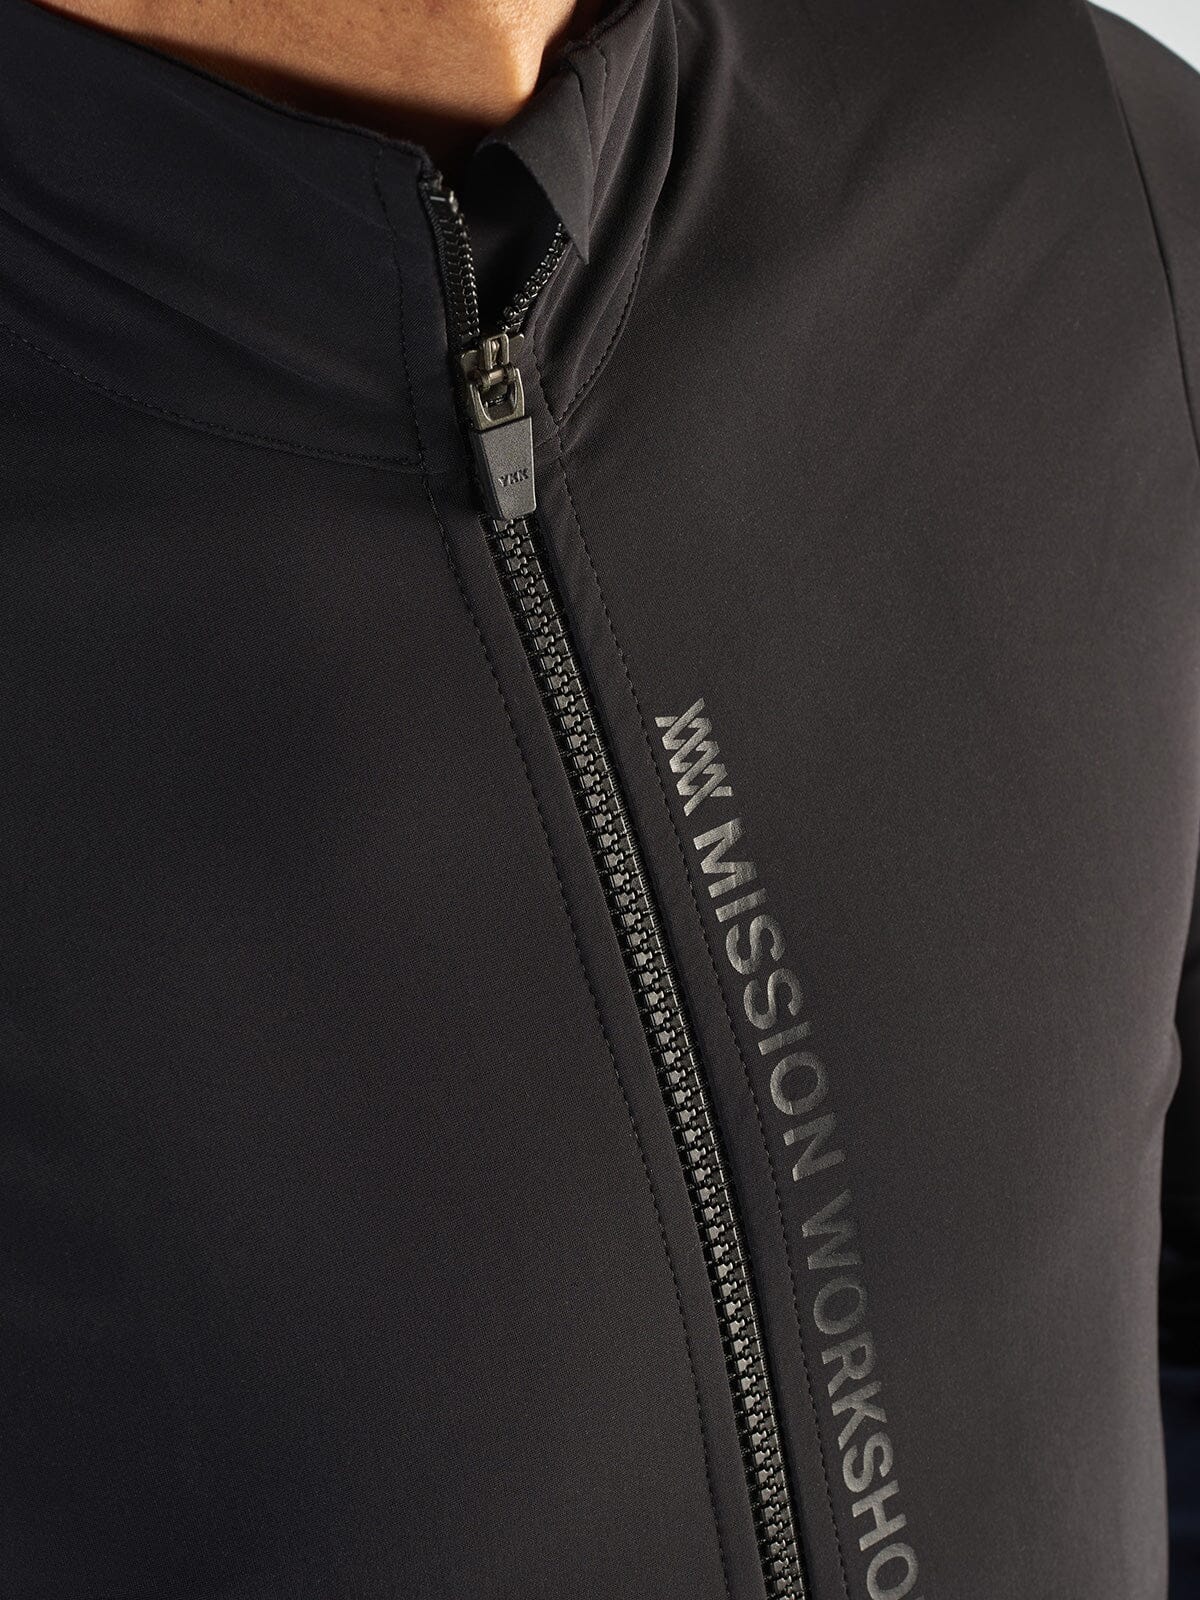 Range Jacket Men's by Mission Workshop - Vädertåliga väskor och tekniska kläder - San Francisco och Los Angeles - Byggda för att tåla - Garanterade för alltid